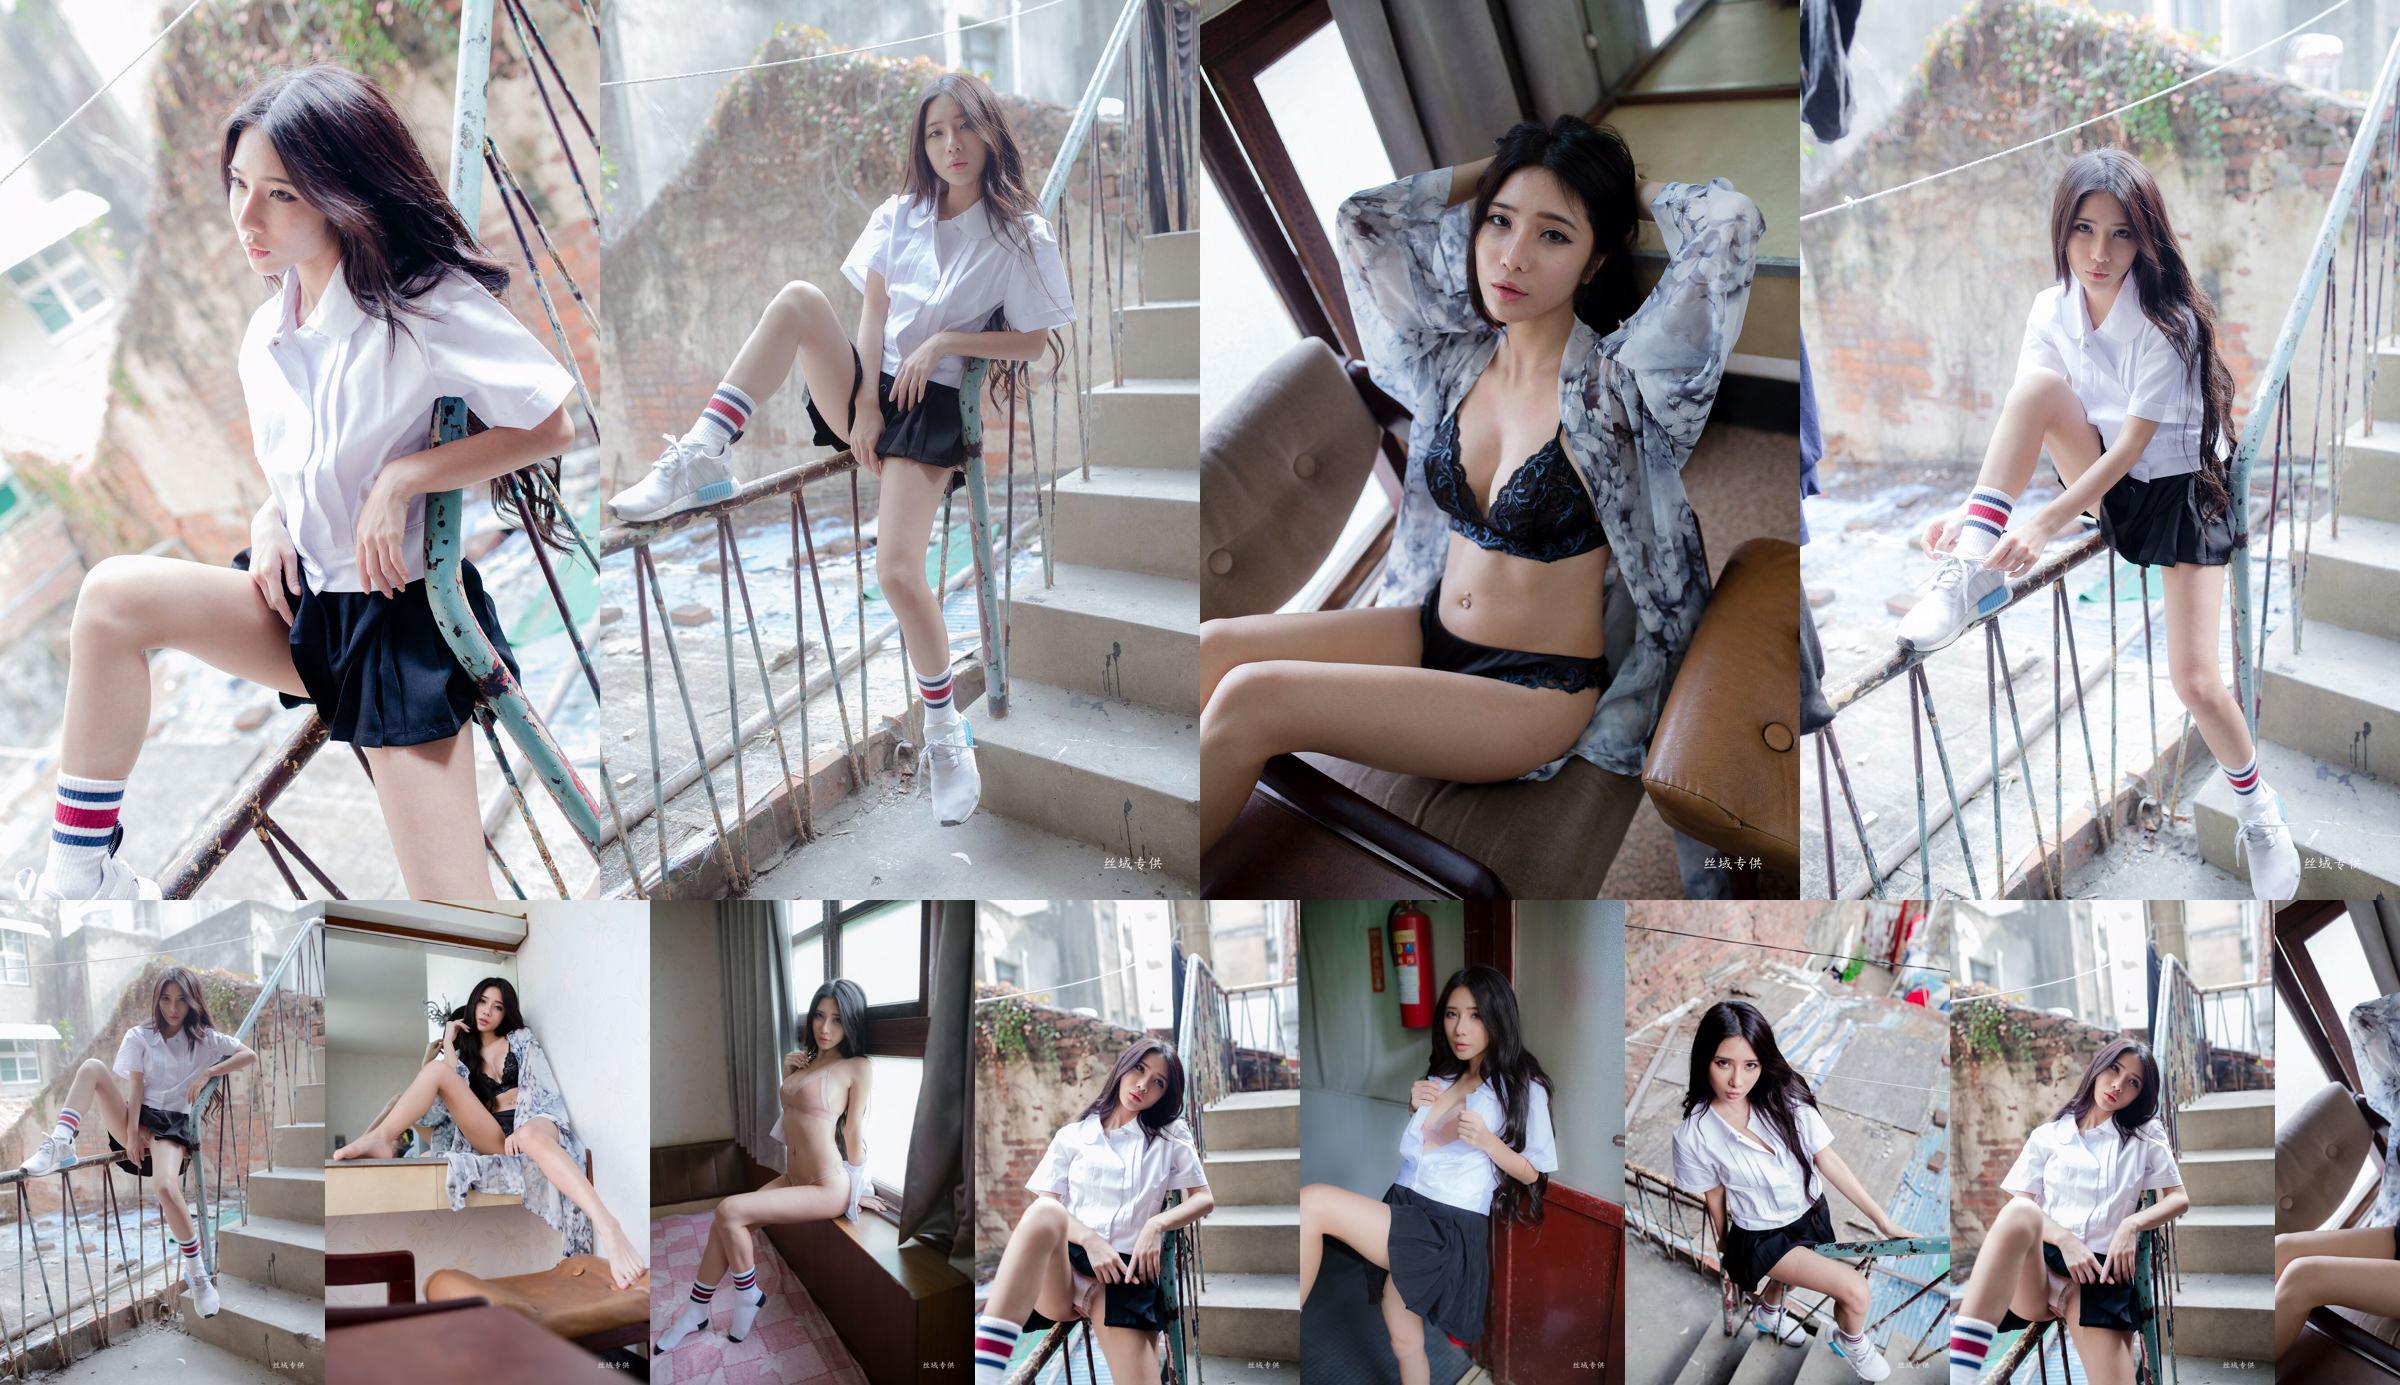 [Taiwan Zhengmei] Shen Qiqi "Outside Shooting of Sailor Suit Underwear" No.9cbff2 Page 3